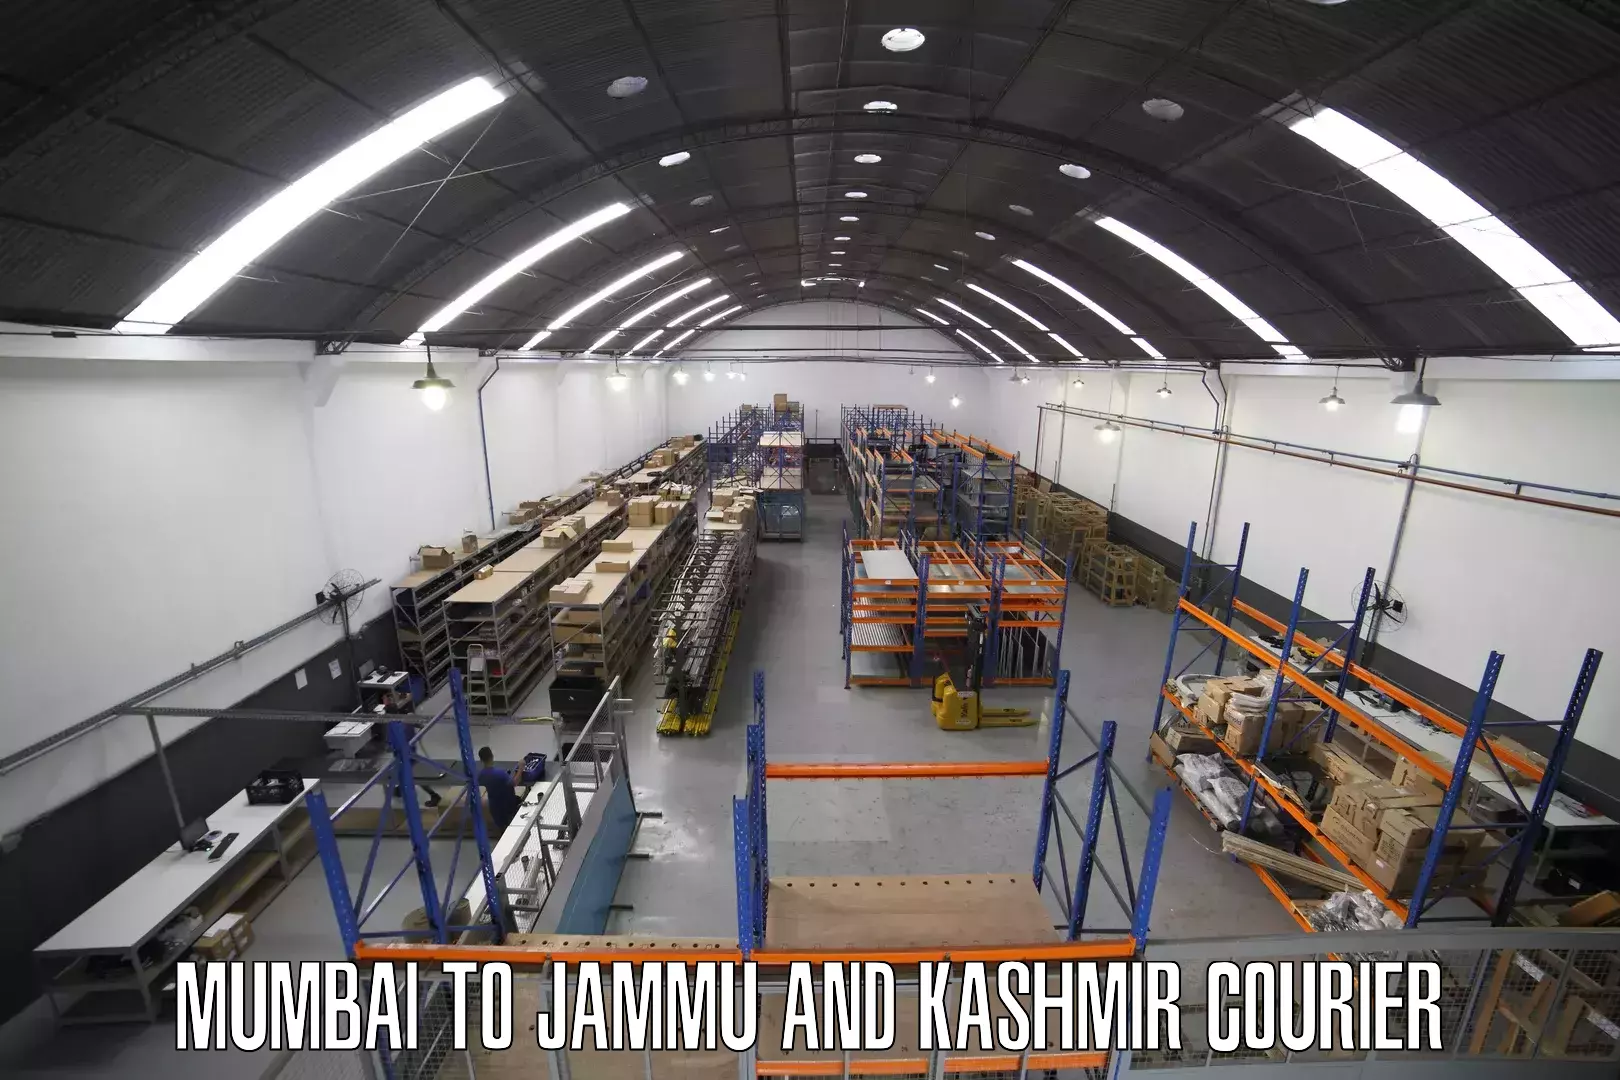 Weekend courier service Mumbai to Jammu and Kashmir